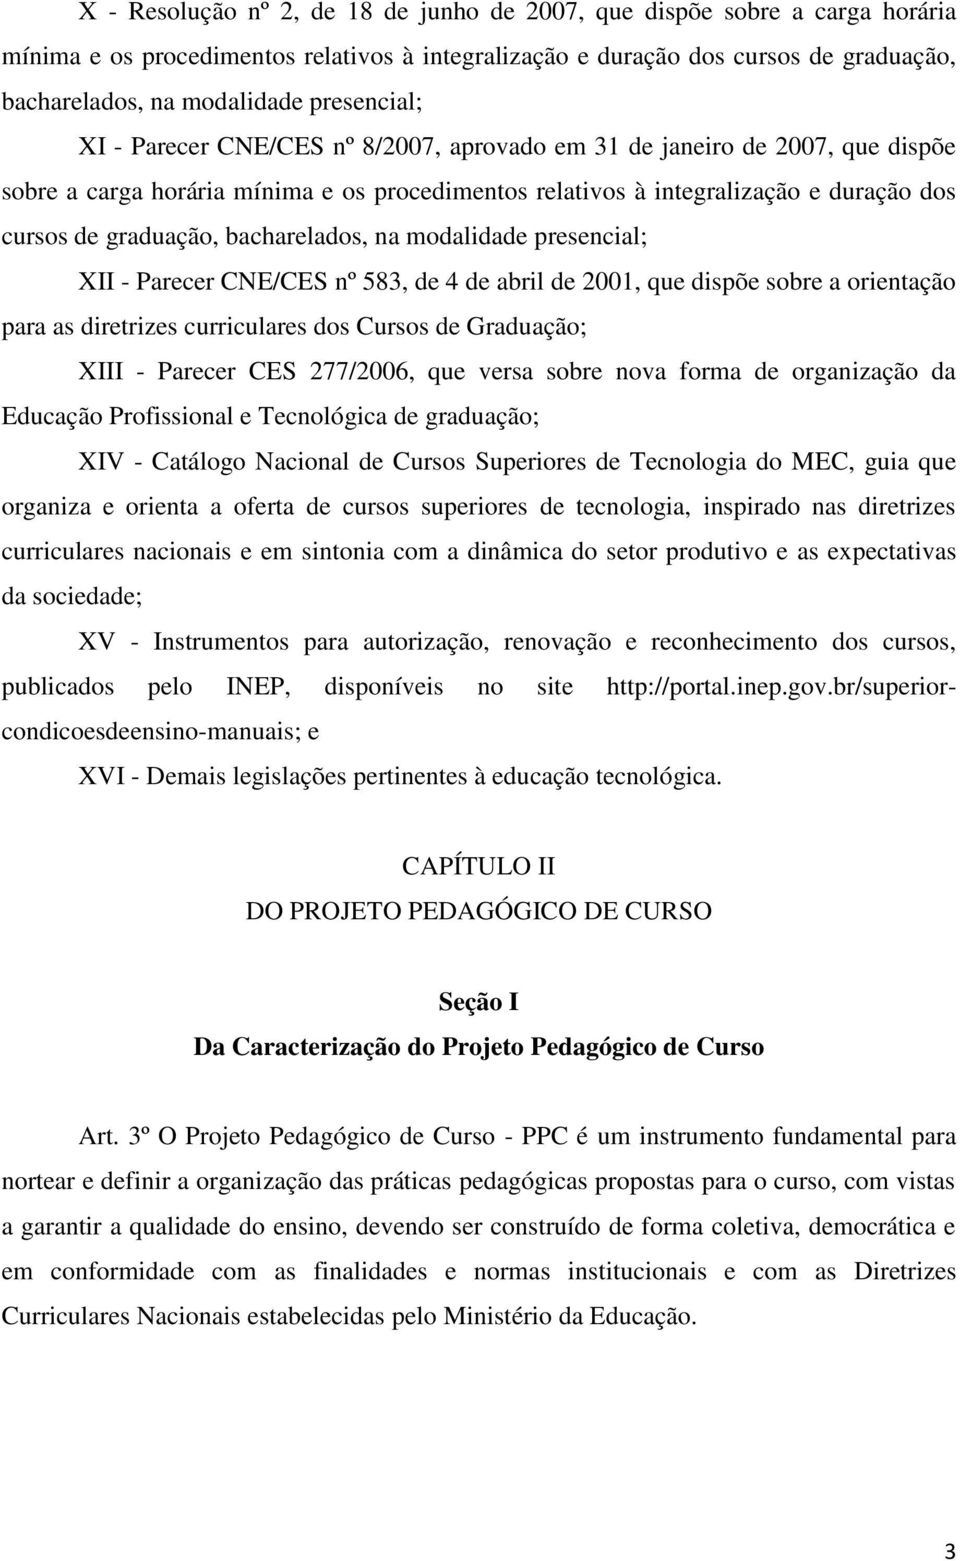 bacharelados, na modalidade presencial; XII - Parecer CNE/CES nº 583, de 4 de abril de 2001, que dispõe sobre a orientação para as diretrizes curriculares dos Cursos de Graduação; XIII - Parecer CES